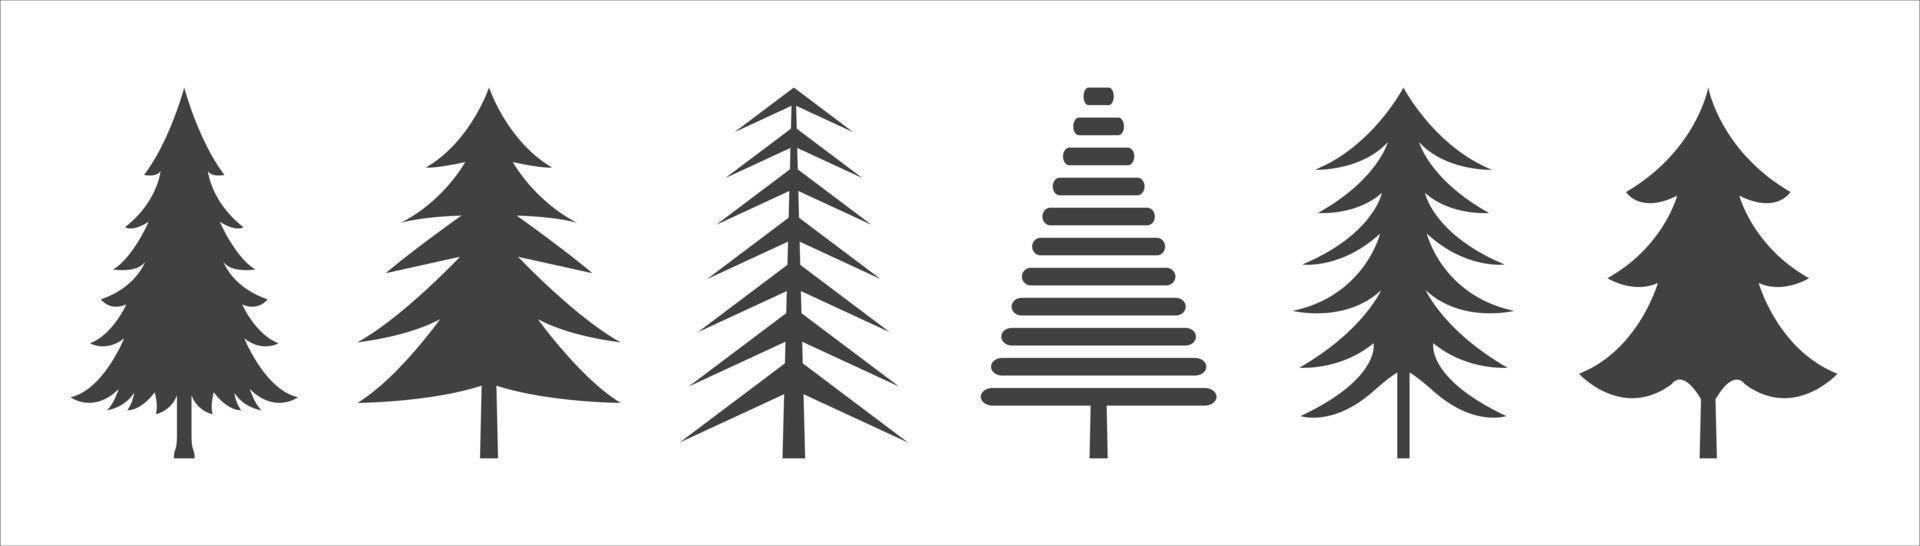 Weihnachtsbaum-Symbole Vektor schwarze Silhouette auf weißem Hintergrund.